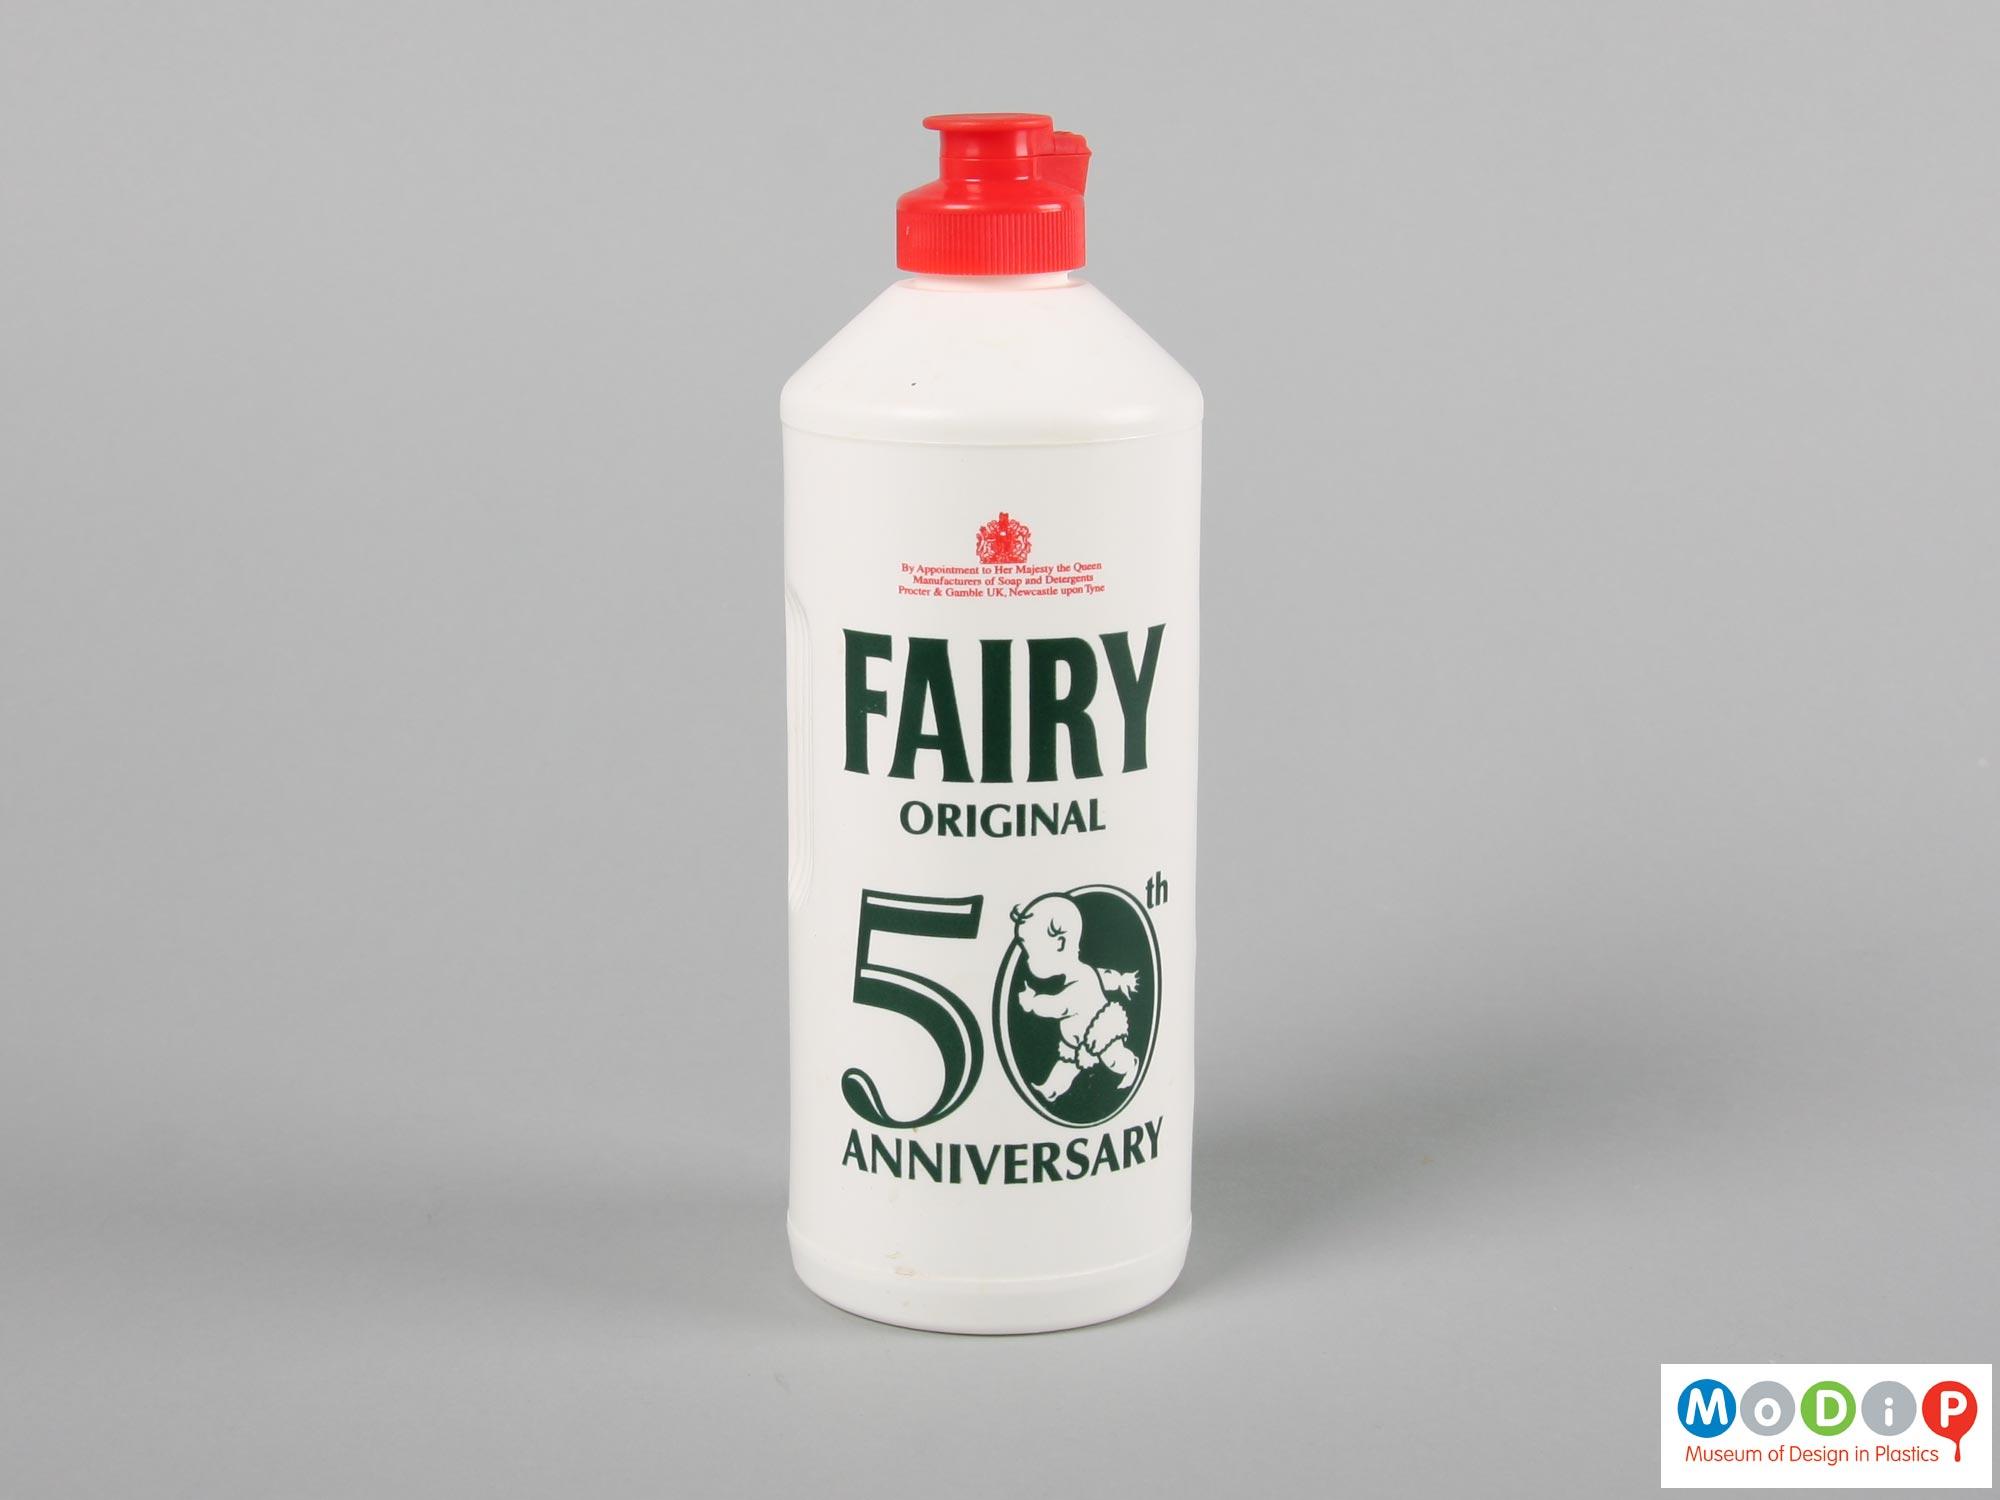 Fairy Original 50th Anniversary bottle | Museum of Design in Plastics